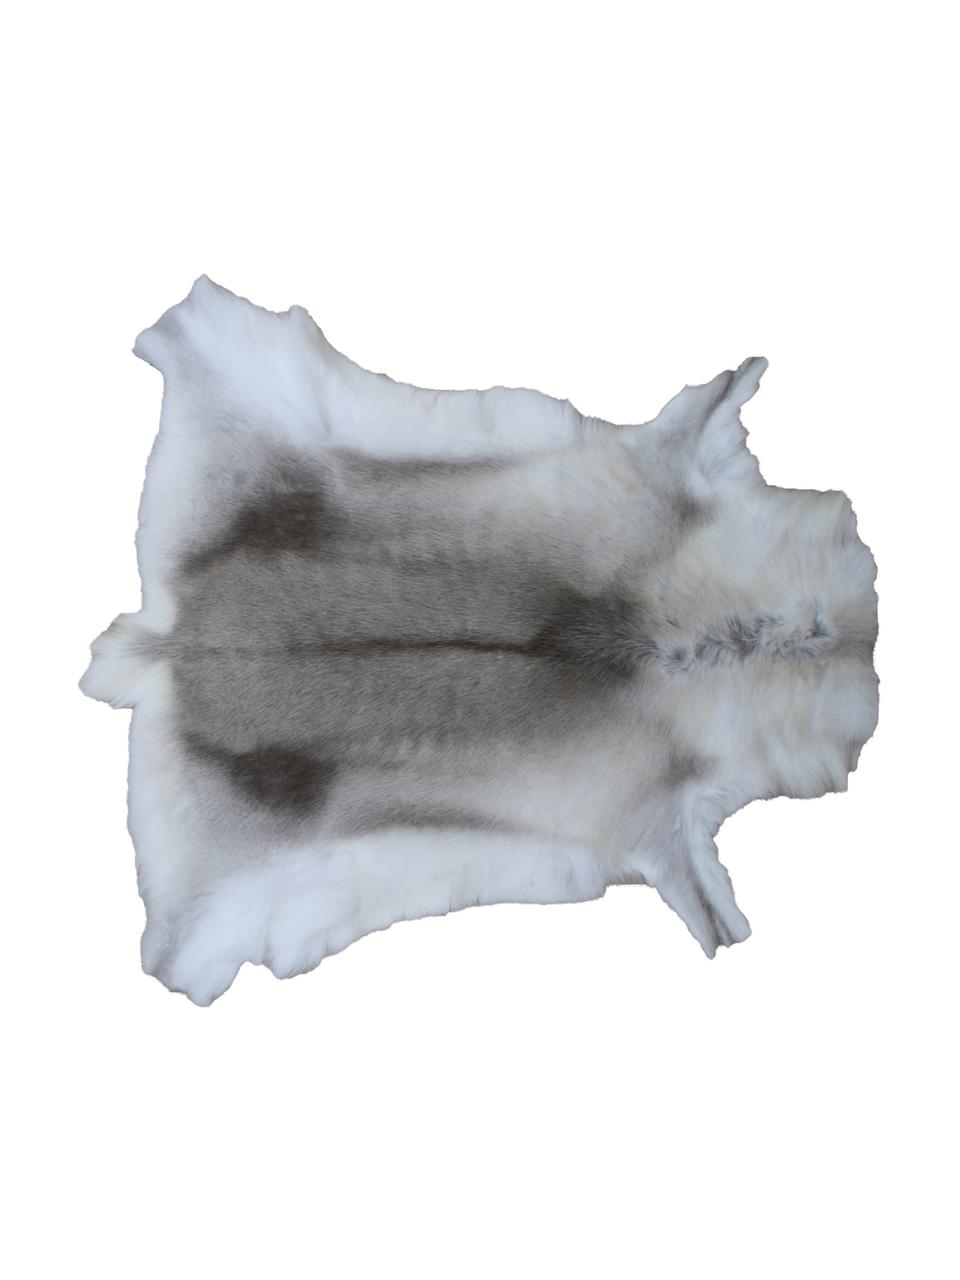 Afombra de piel de reno Zontas, Piel de reno, Tonos marrones, blanco, Piel de reno única 175, 75 x 115 cm